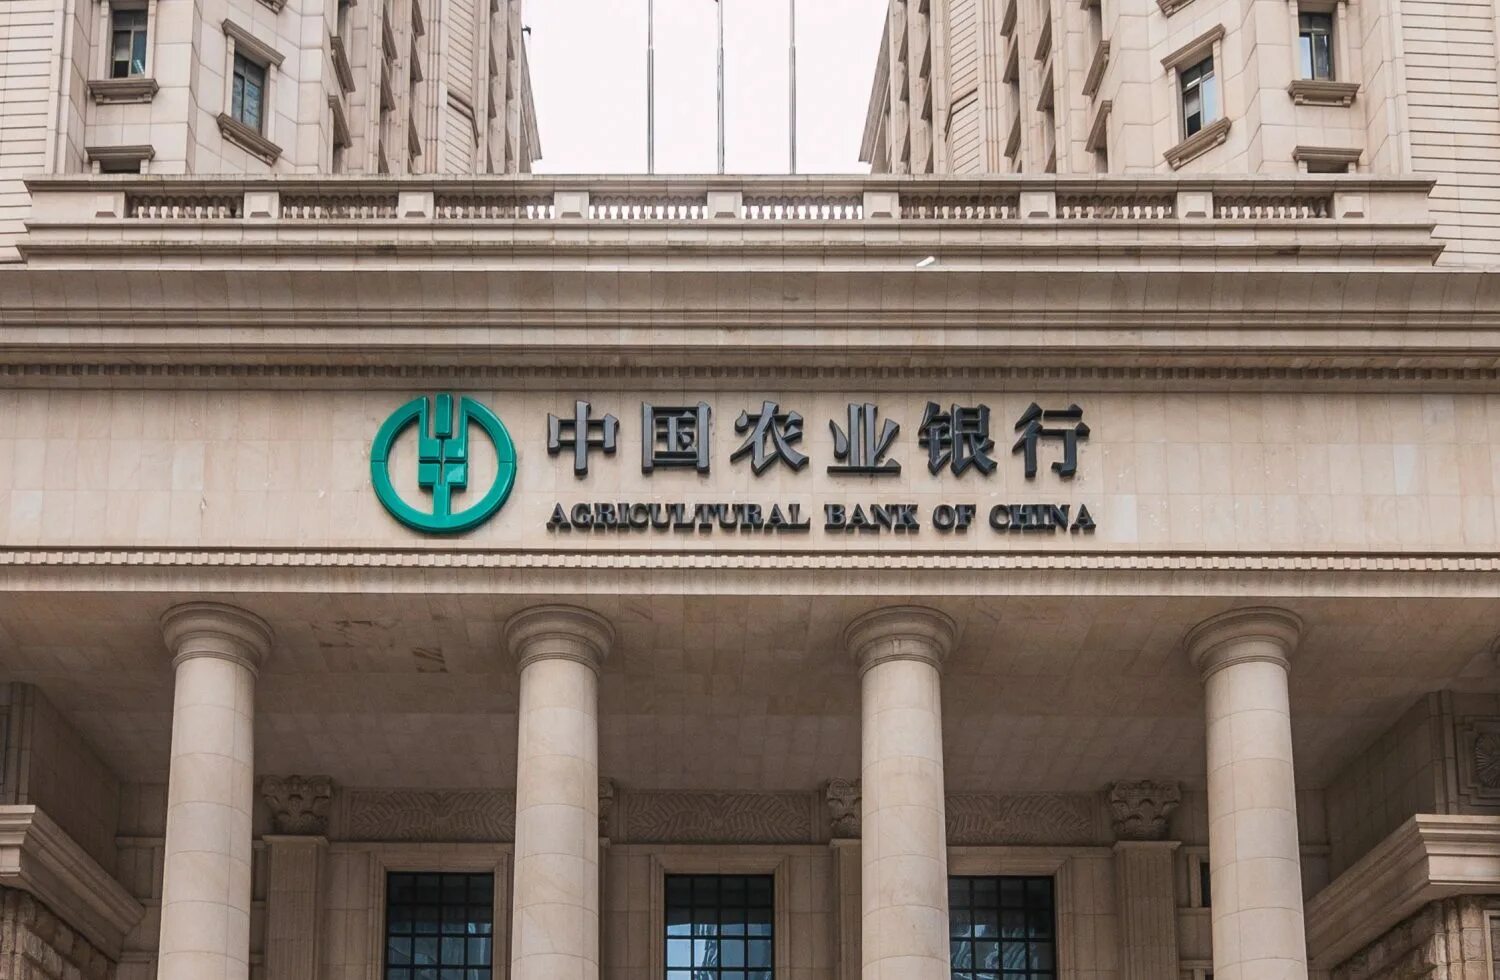 Банк Китая (Bank of China). Сельскохозяйственный банк Китая. Банки развития Китая. Агрокульурный бан Китая.